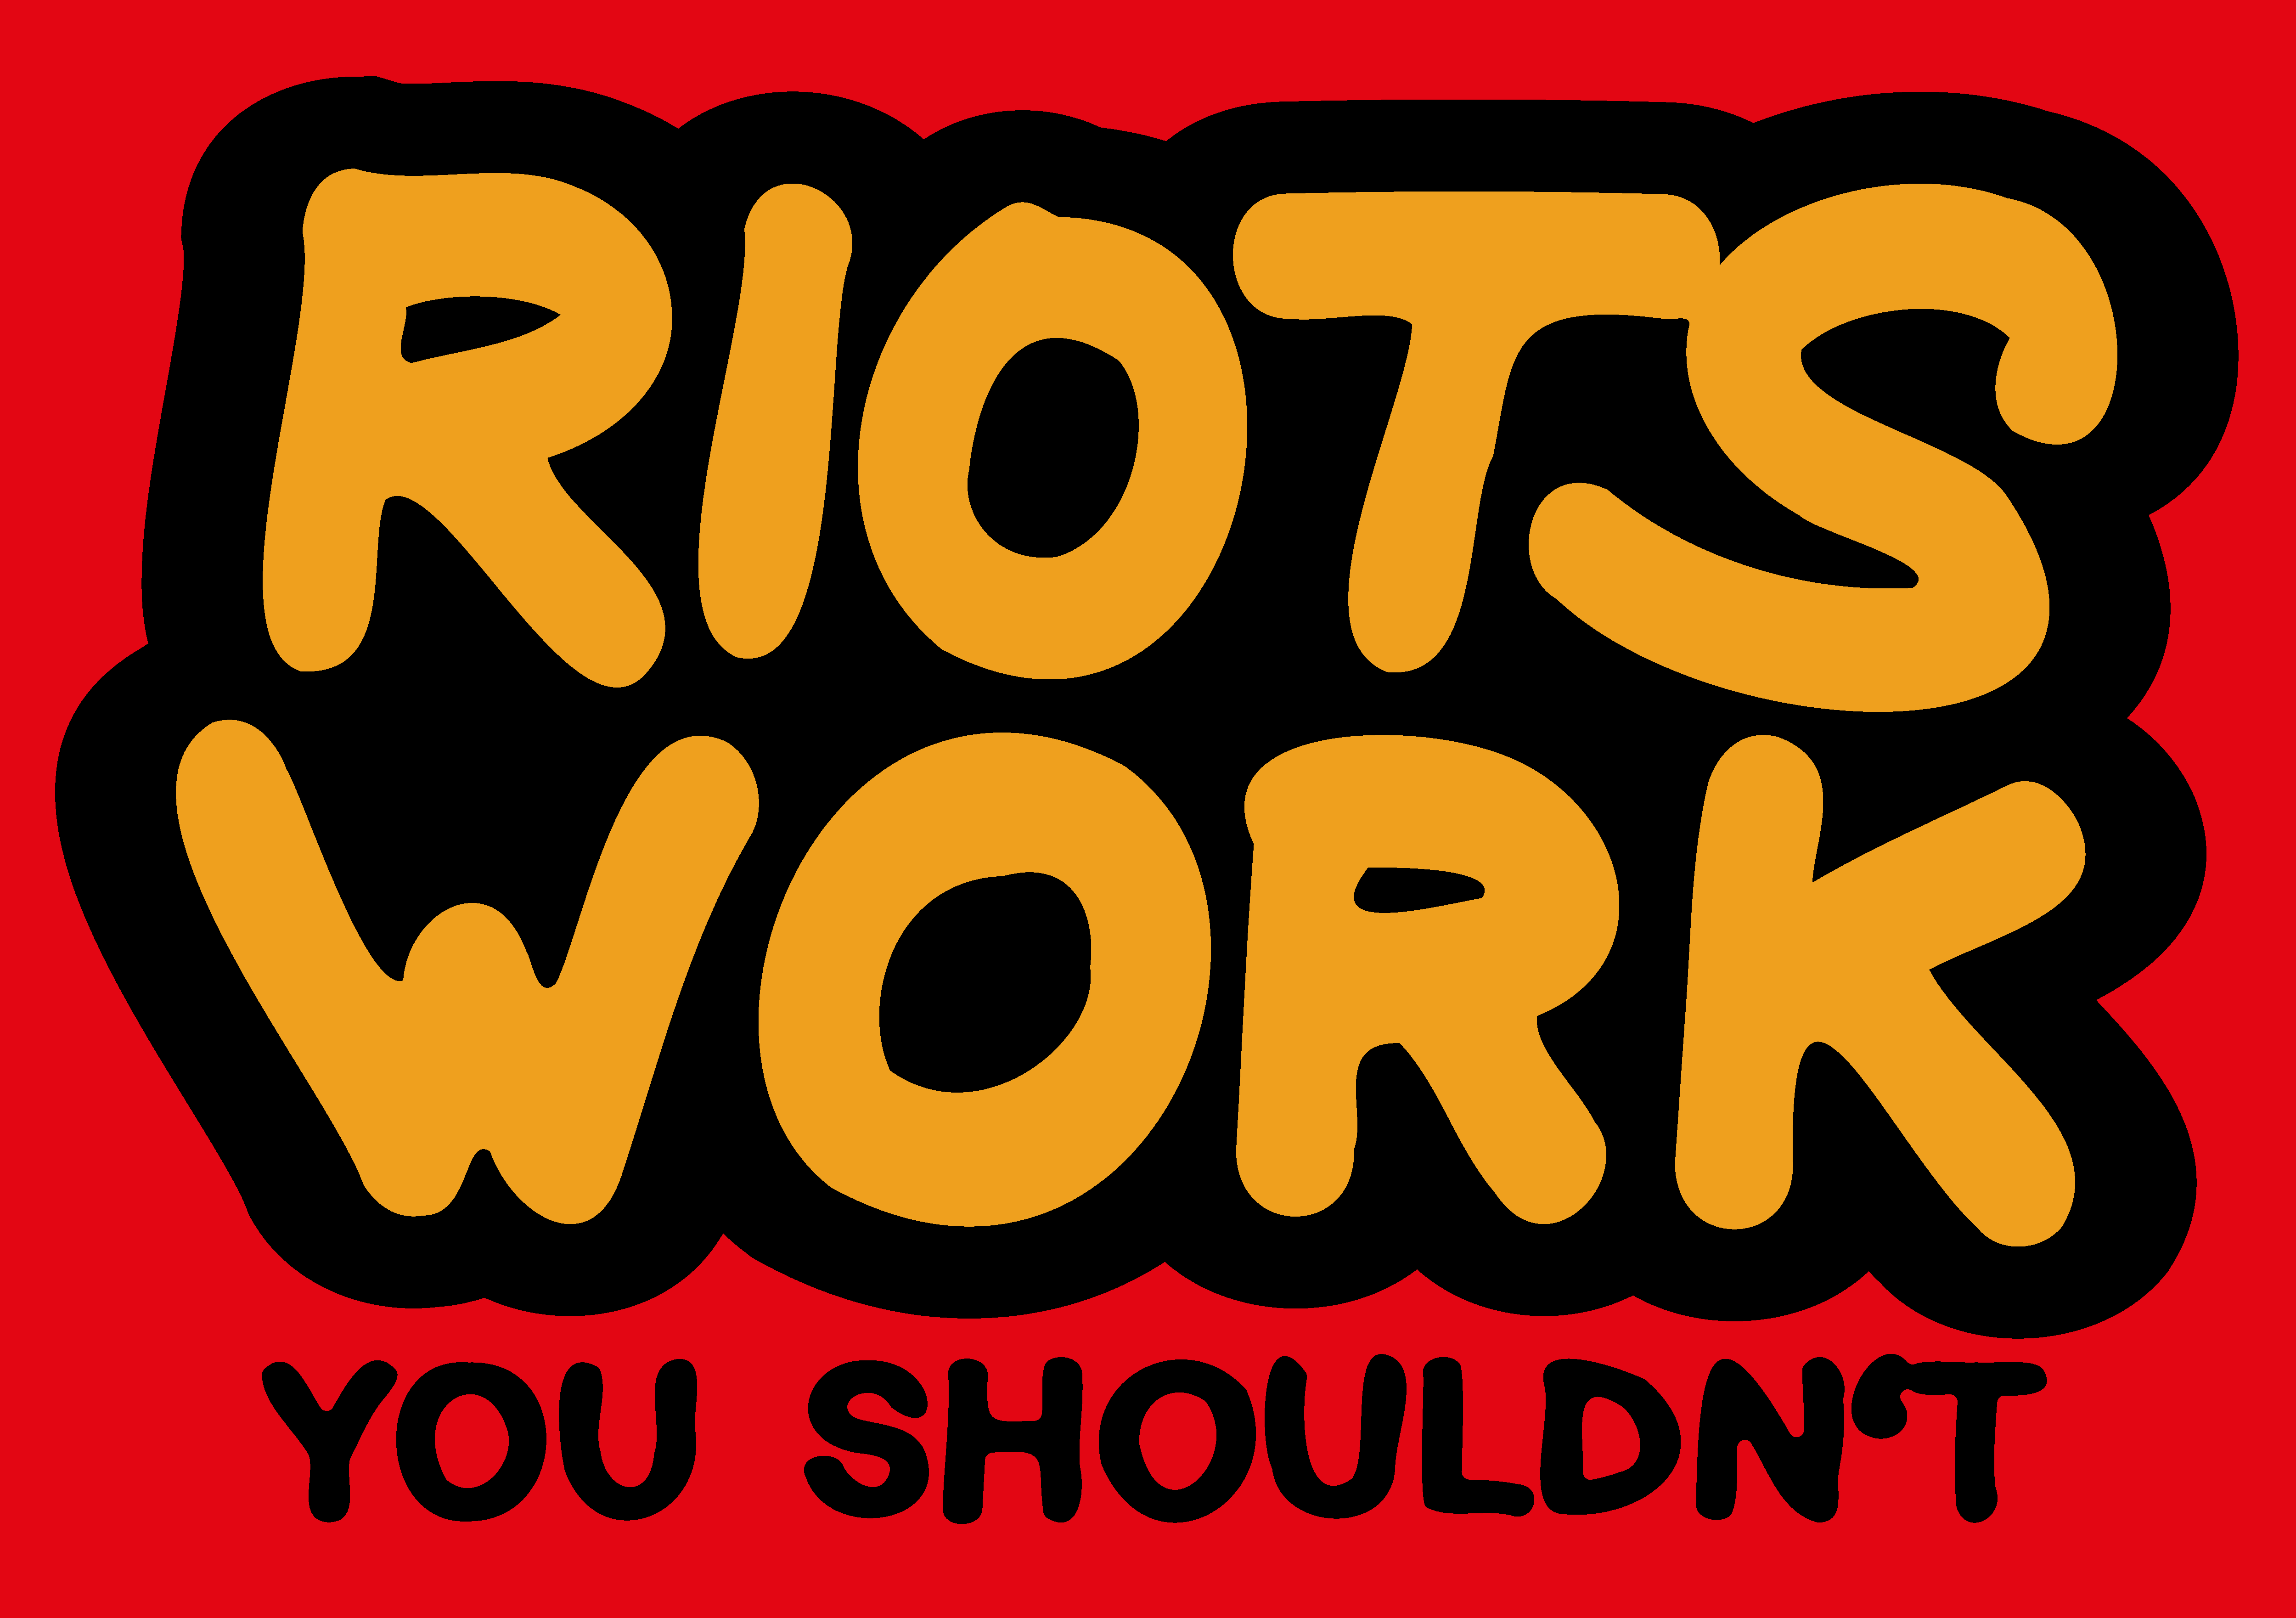 Riots Work